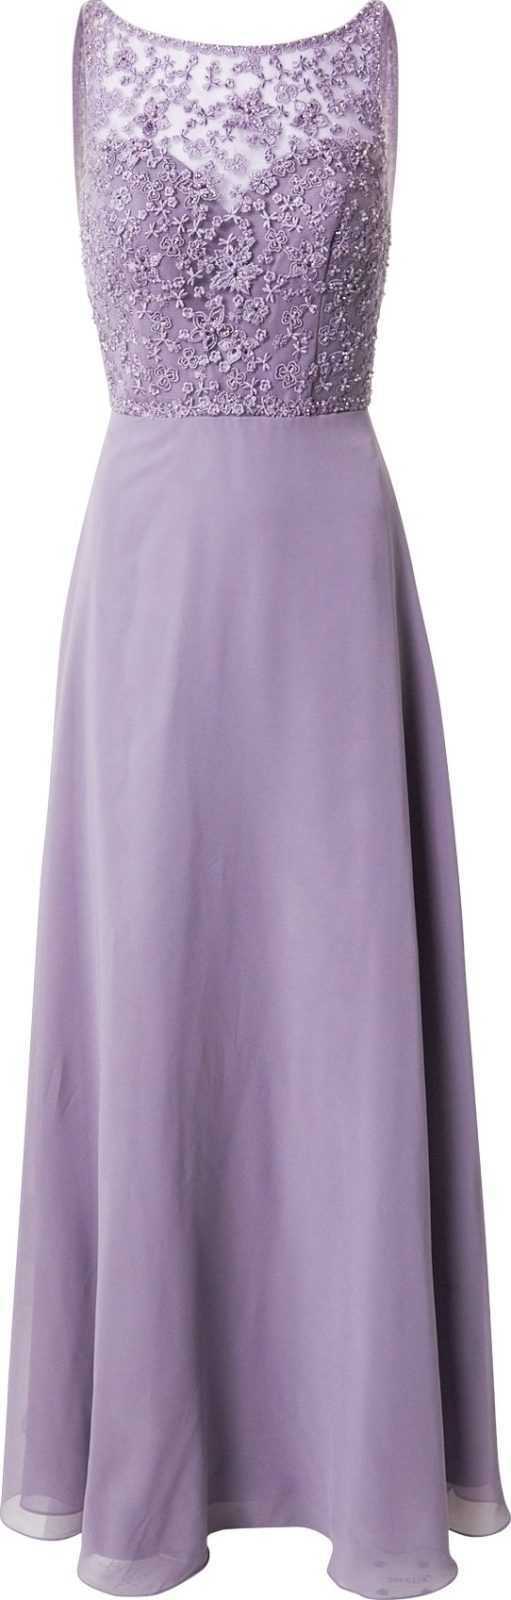 Laona Společenské šaty fialová